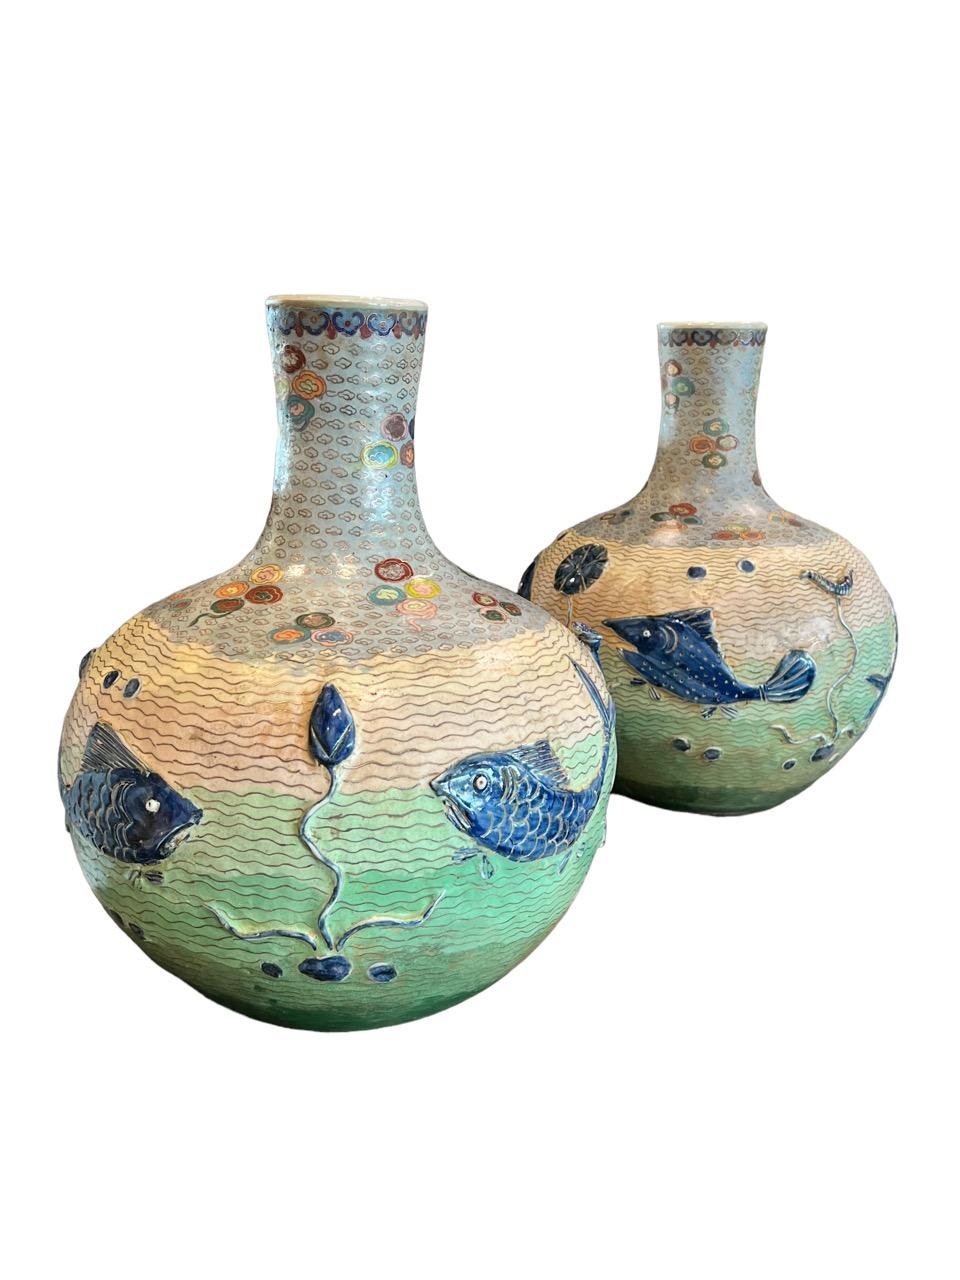 20ième siècle Paire de vases en porcelaine émaillée cloisonnée datant du début du 20e siècle (années 1900).